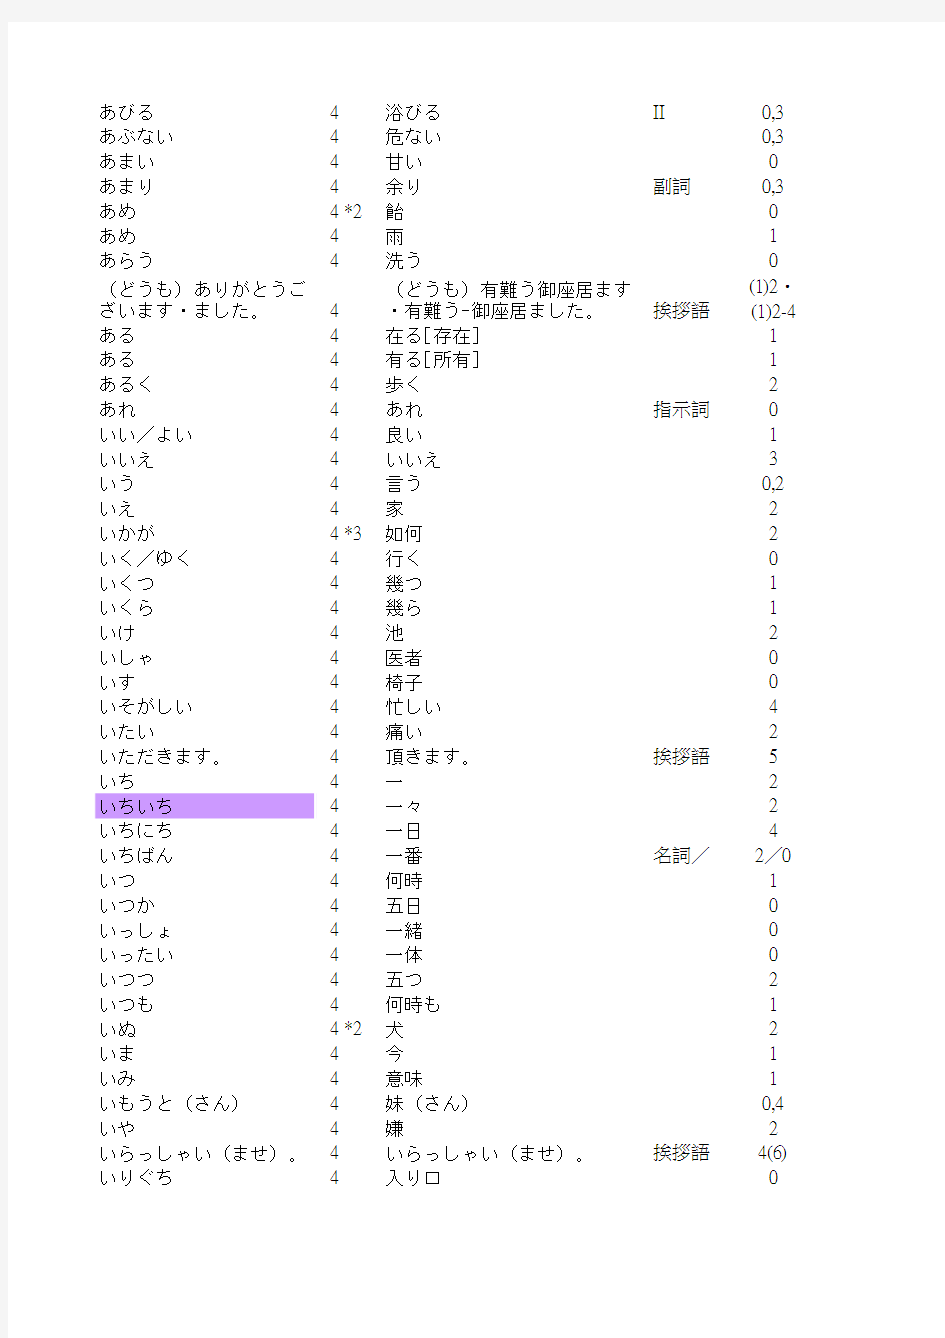 日本语能力考试出题基准词汇表(4级)